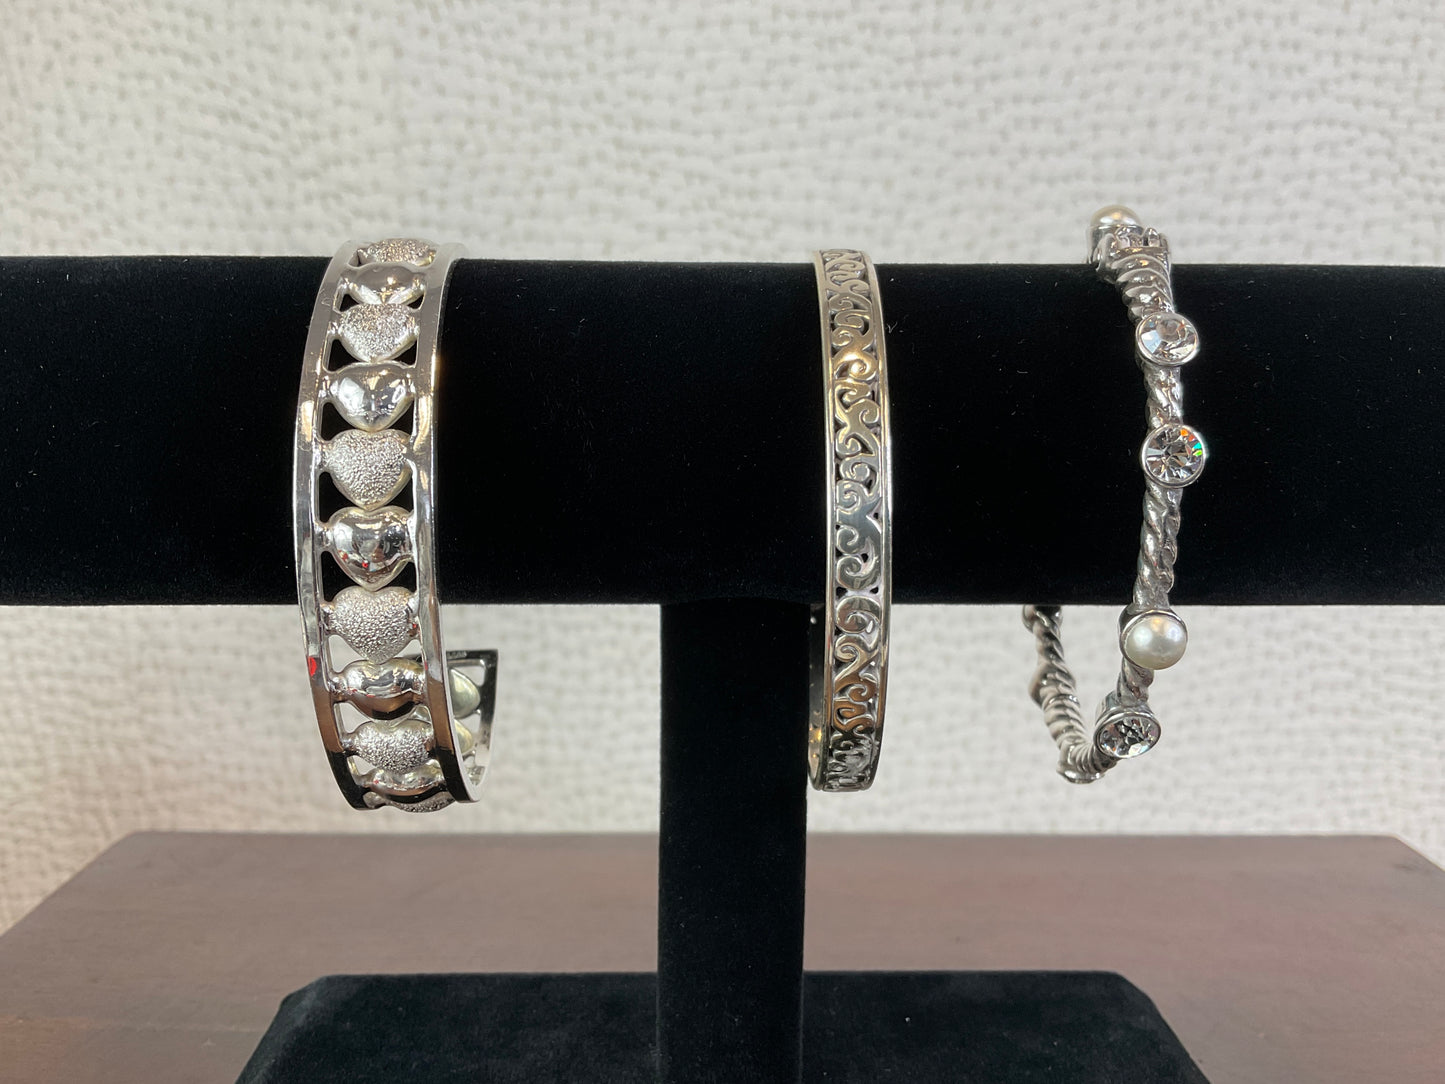 Silver Tone Bracelets, Sold Separately